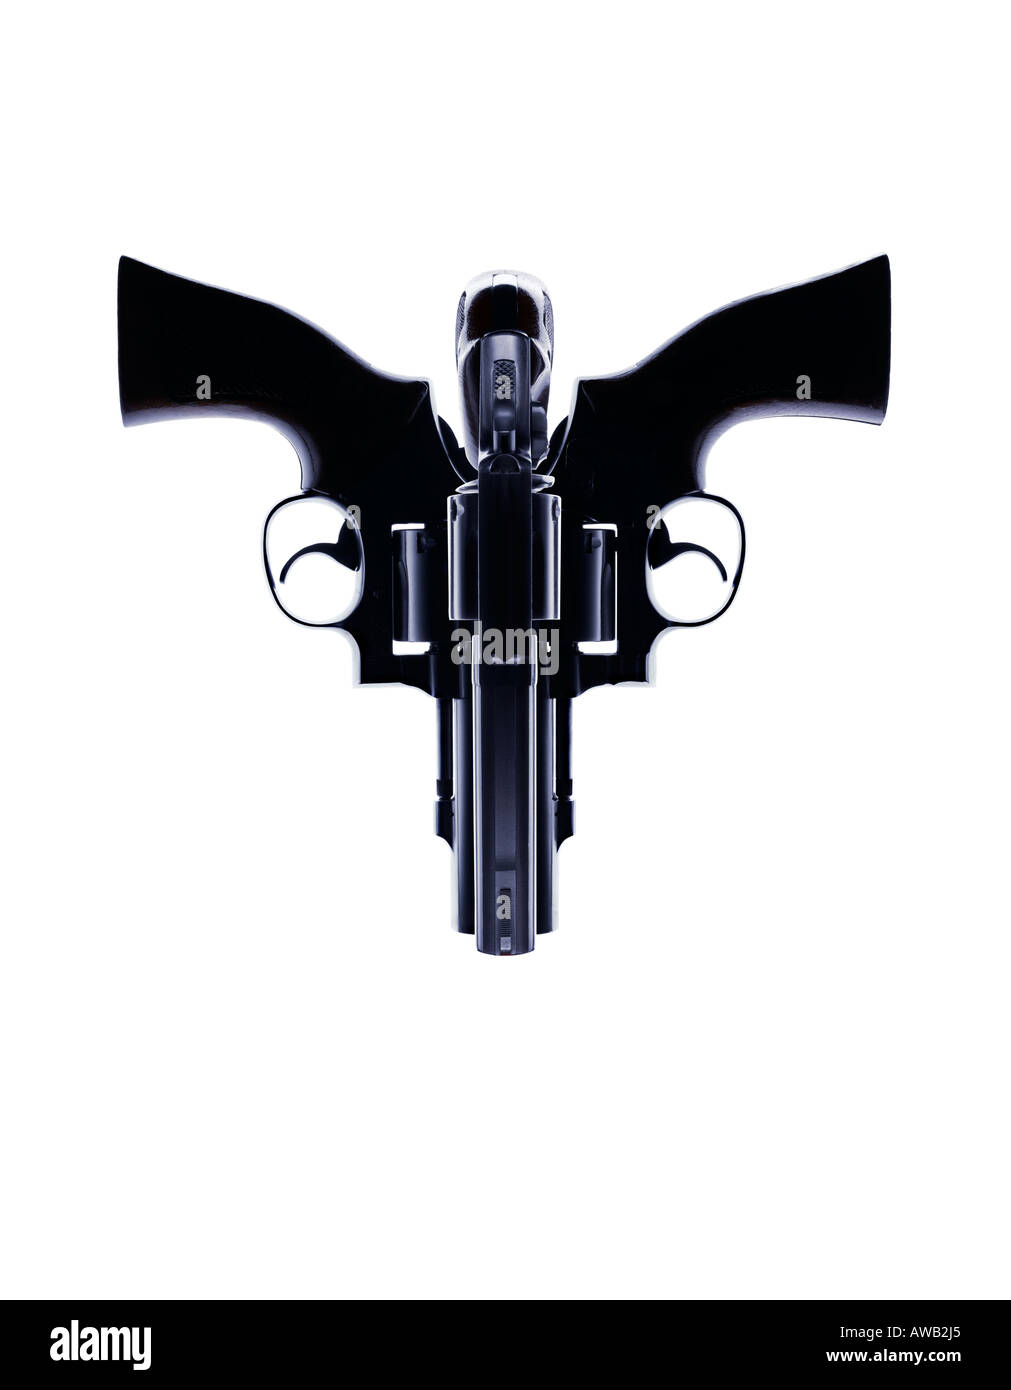 3 fusils Magnum shot et positionnés de manière créative pour former un visage ou le crâne Banque D'Images